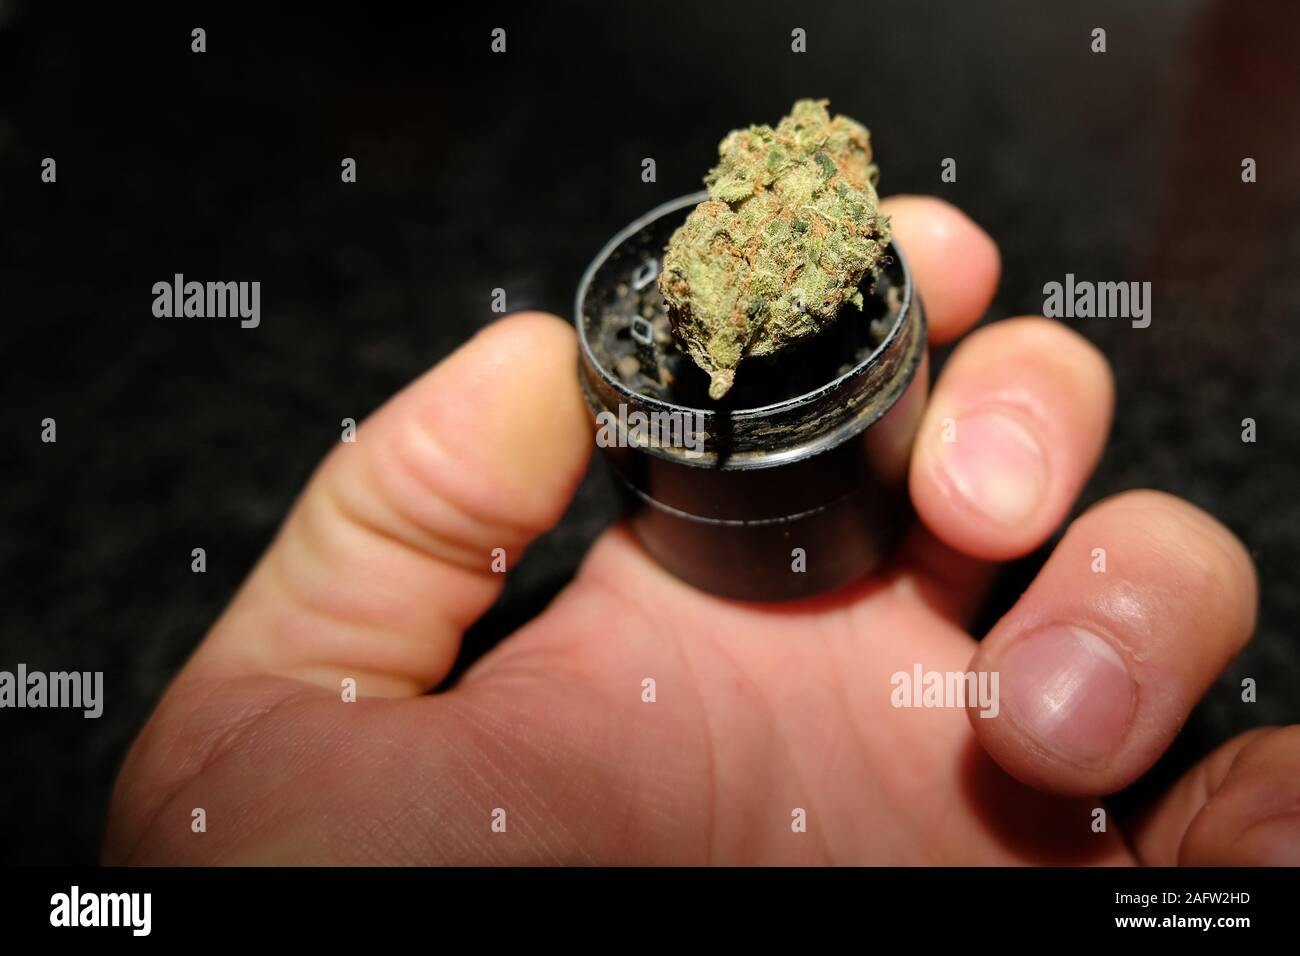 Kerl ein Marihuana bud auf Cannabis grinder Element und halten Sie es, Drogensucht Konzept Stockfoto